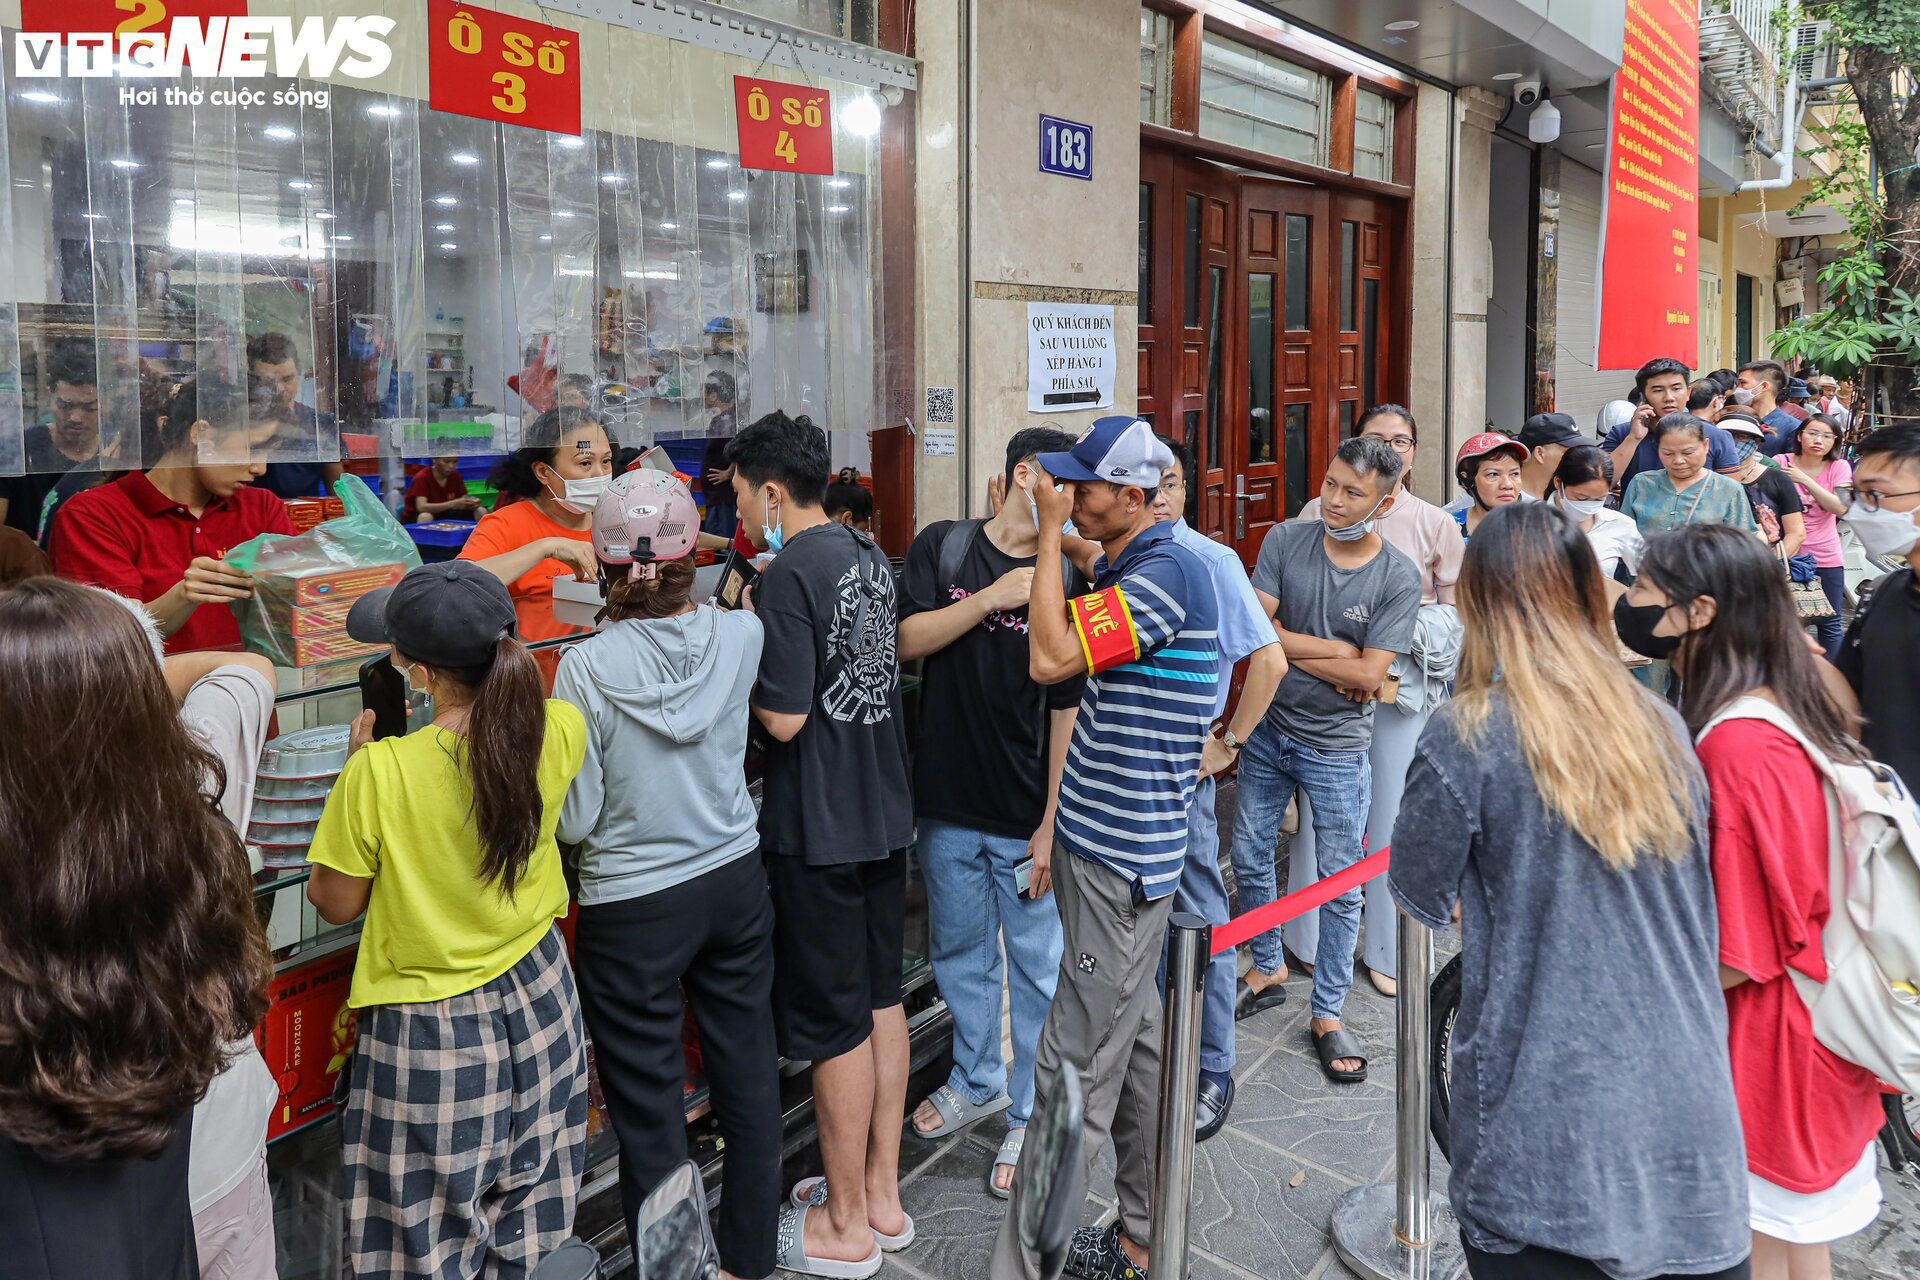 Hàng trăm người xếp hàng chờ mua bánh trung thu ở Hà Nội - Ảnh 4.